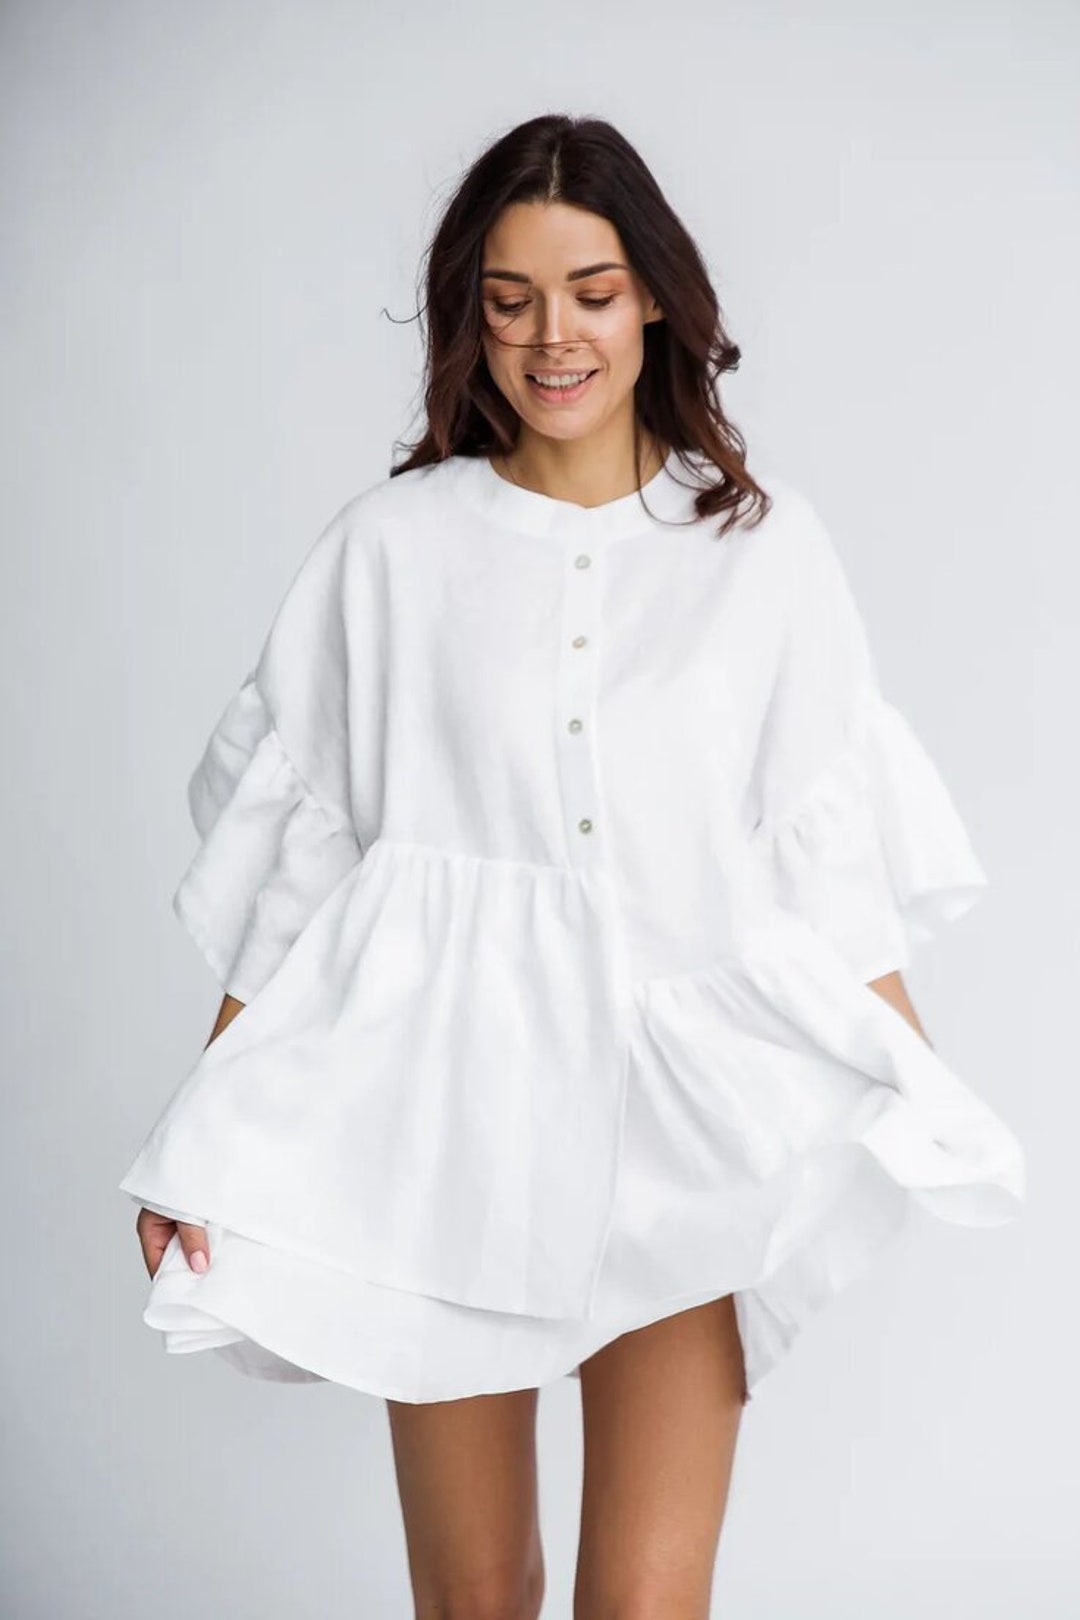 SOPHIE Linen Dress in White / White Linen Shirtdress - Etsy